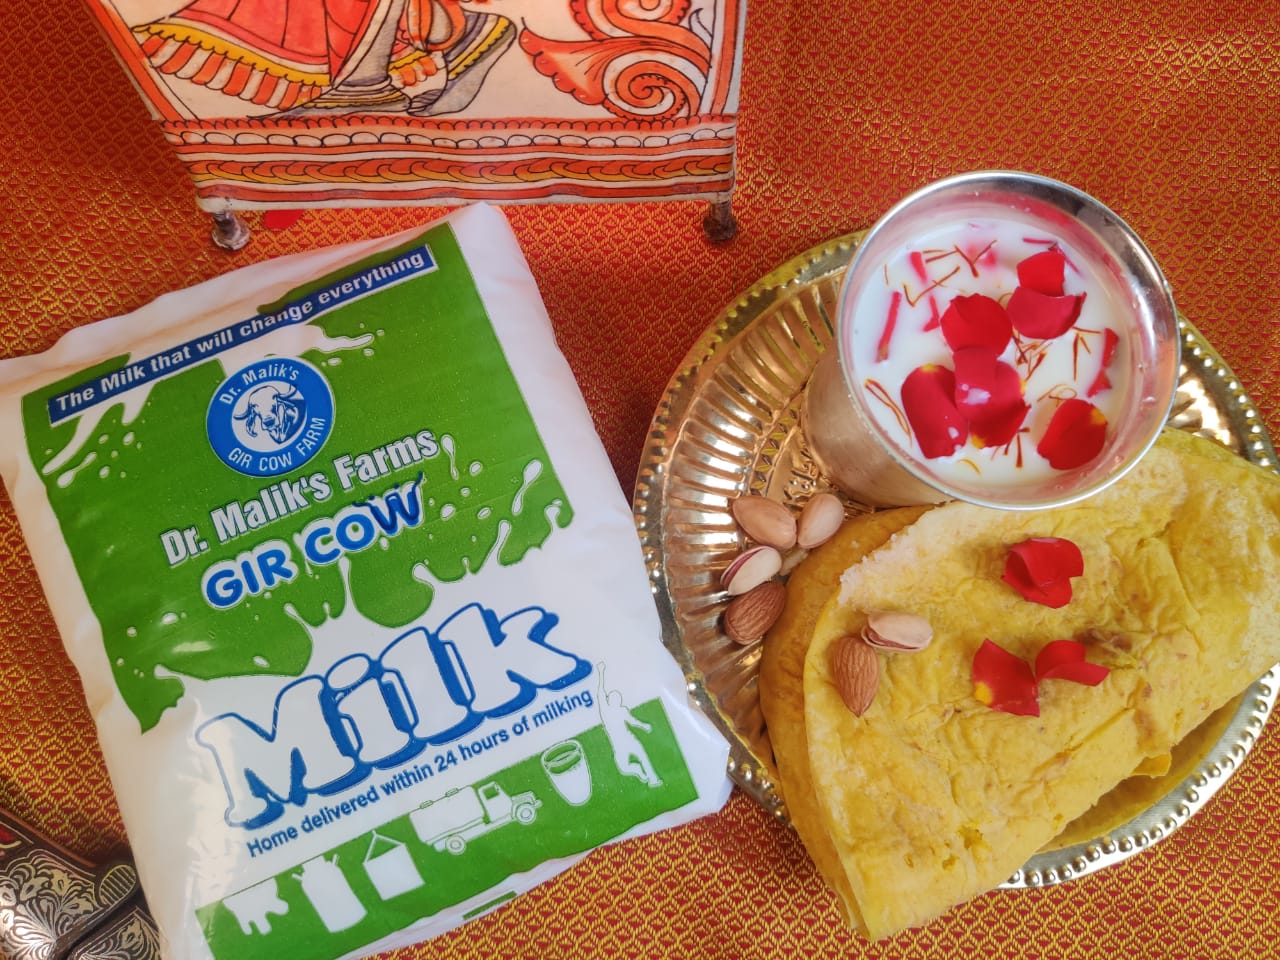 Dr Malik's Gir Cow A2 Milk - 1 Litre